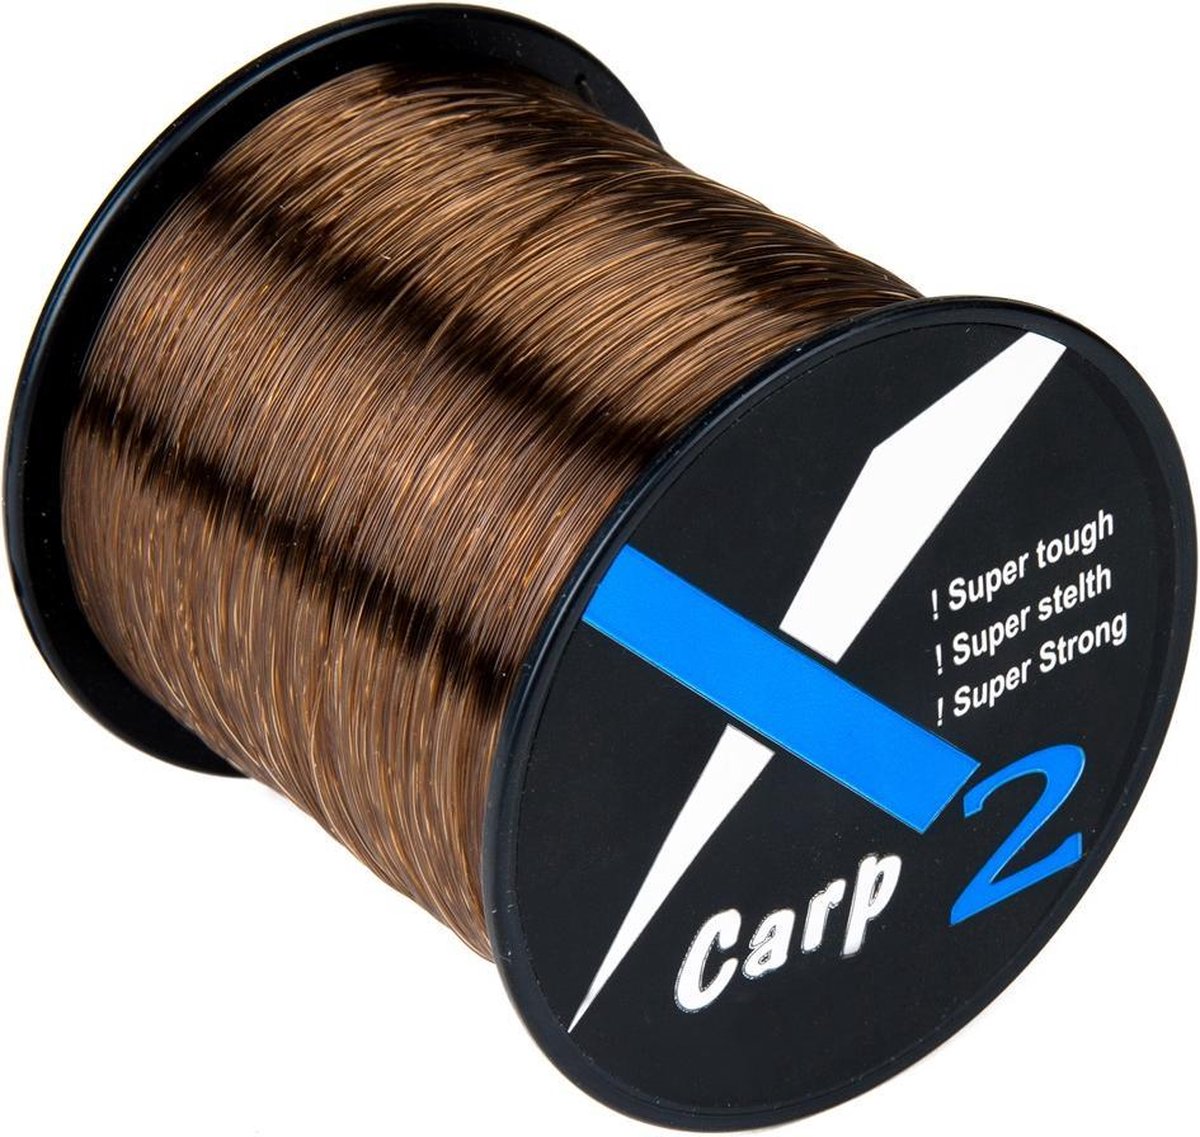 X2 Carp - Karper Nylon Vislijn - Karperlijn - 0.35mm - 825m - Bruin - X2